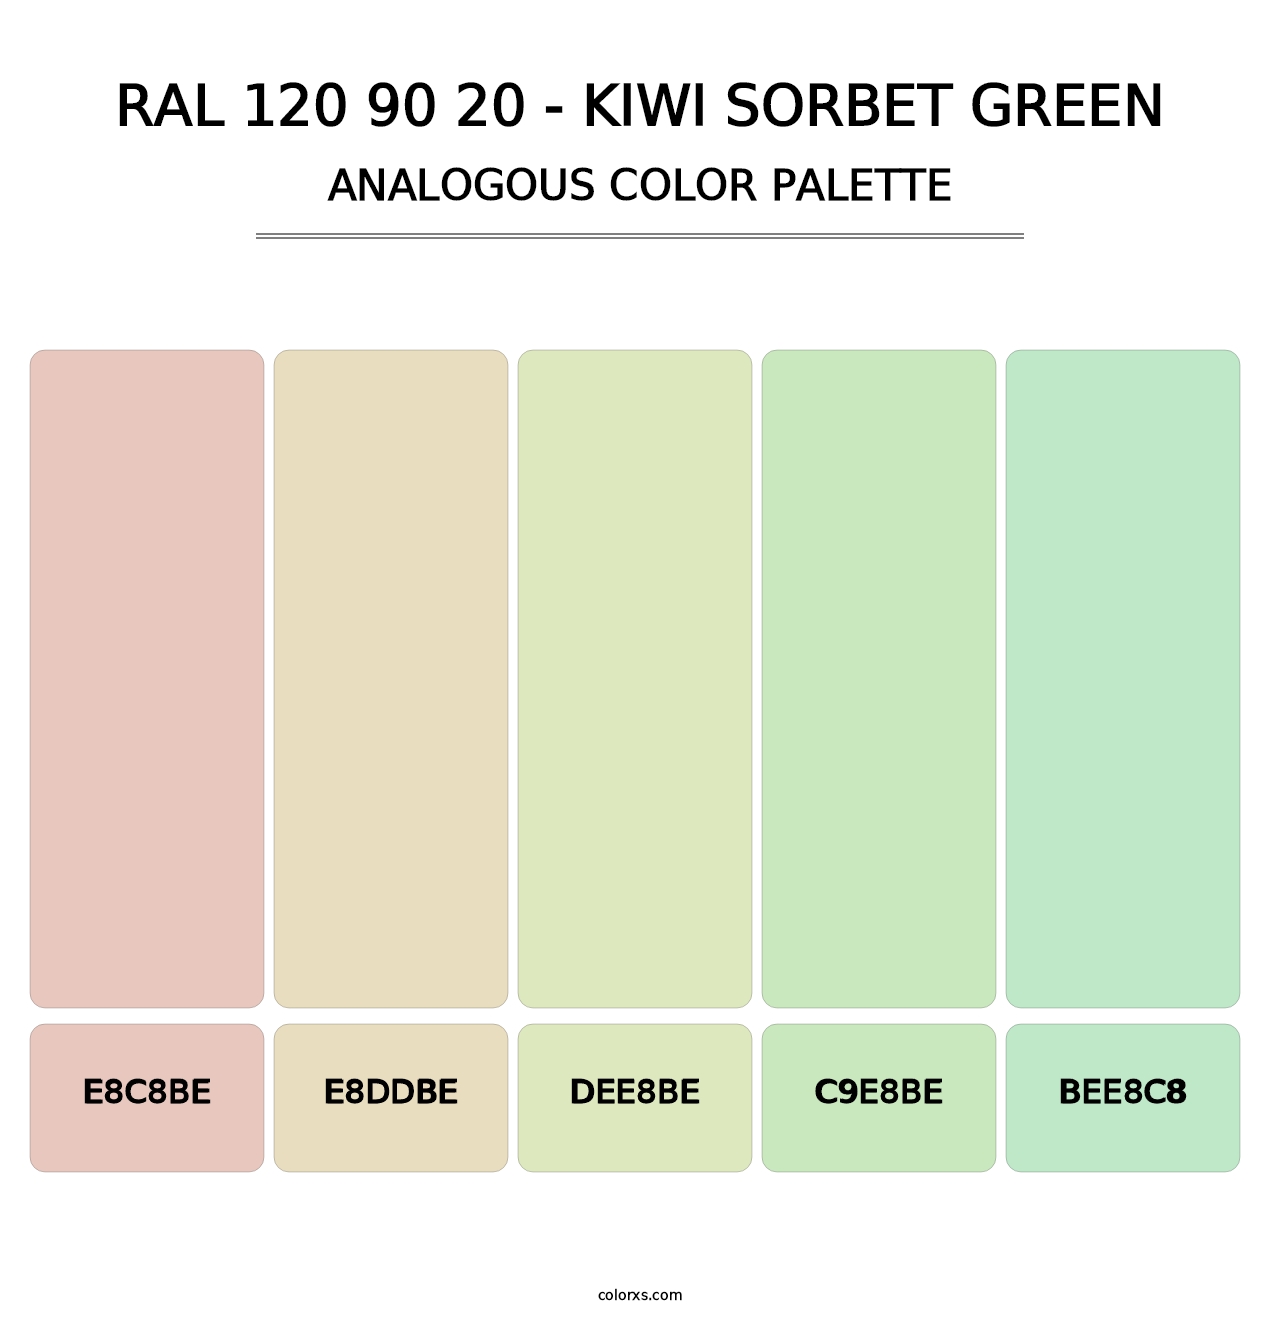 RAL 120 90 20 - Kiwi Sorbet Green - Analogous Color Palette